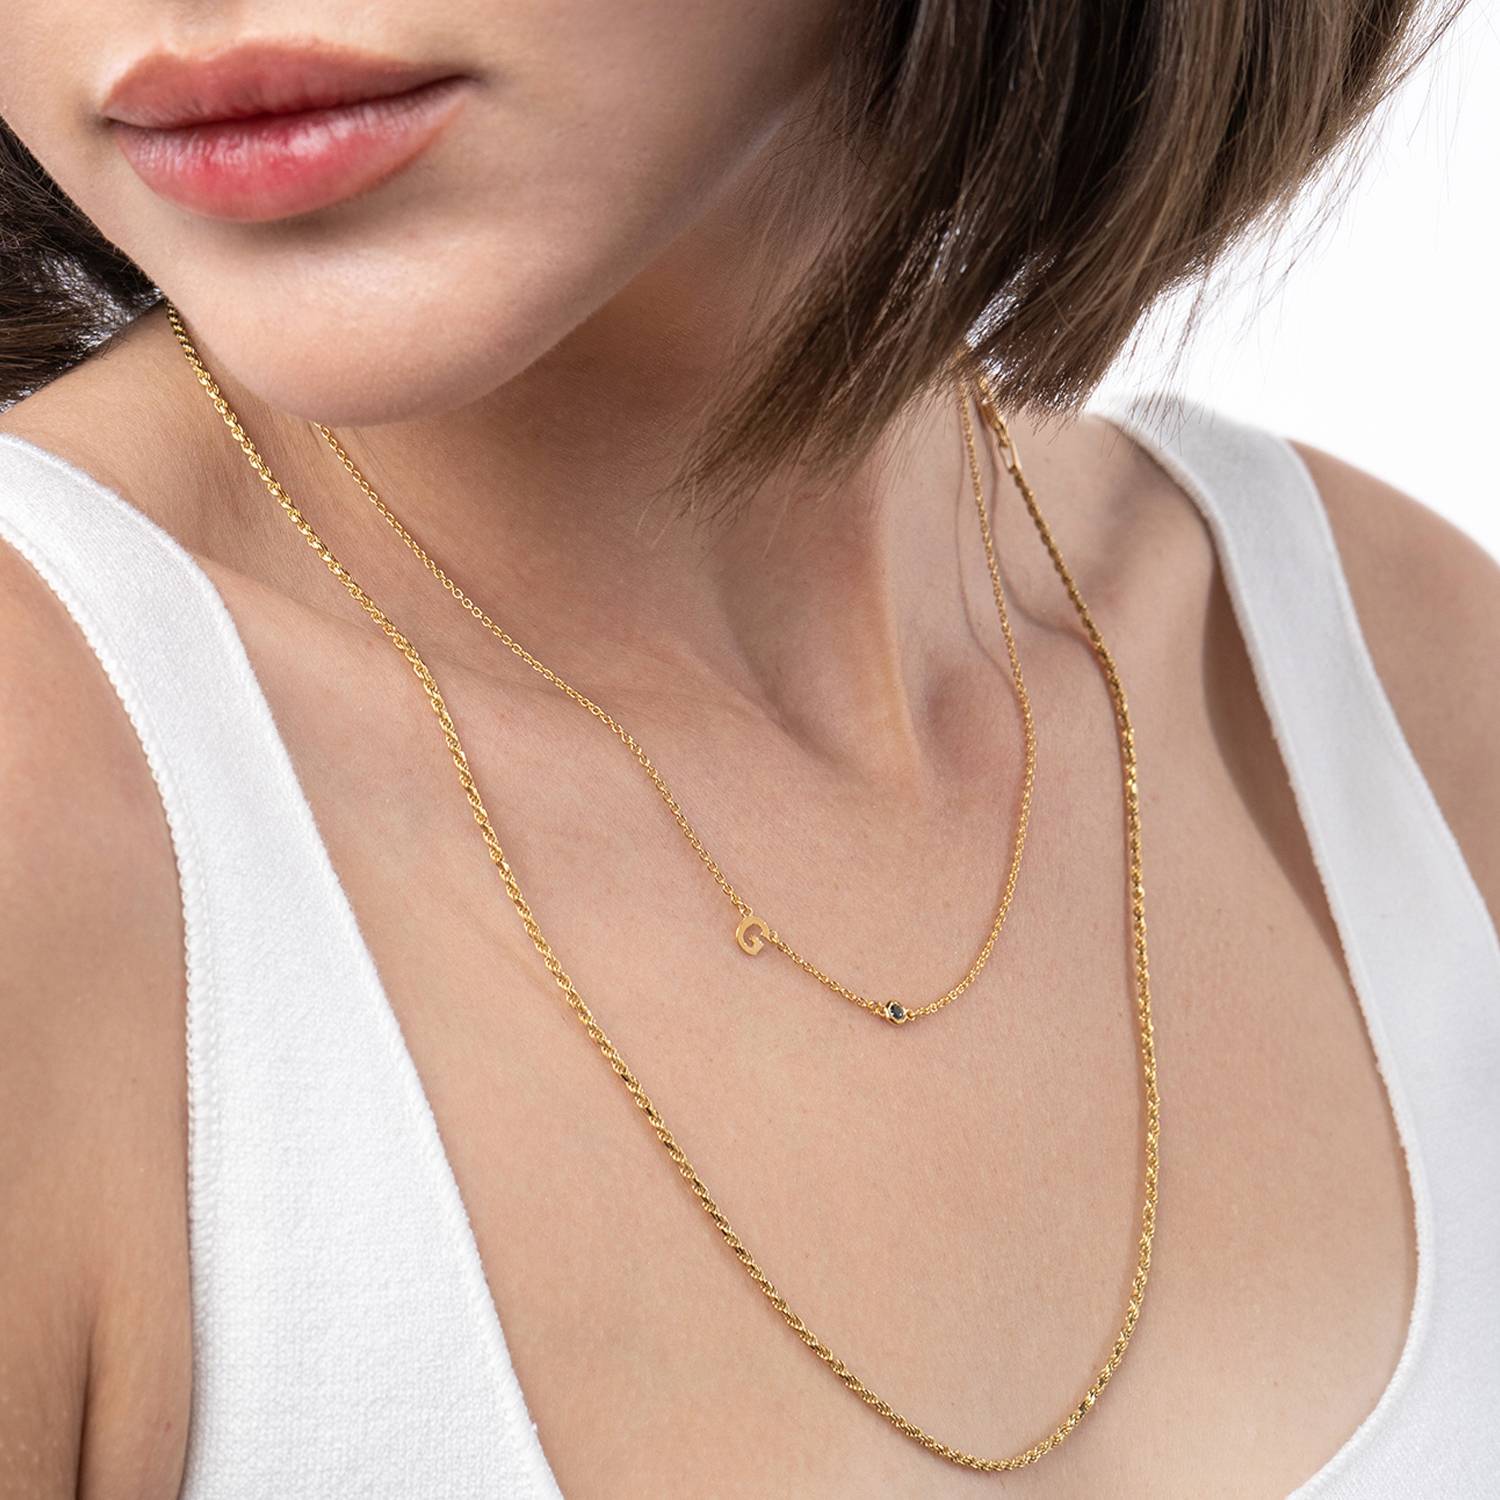 Mia Initialen Halskette mit Edelsteinen - 750er Gold-Vermeil-2 Produktfoto